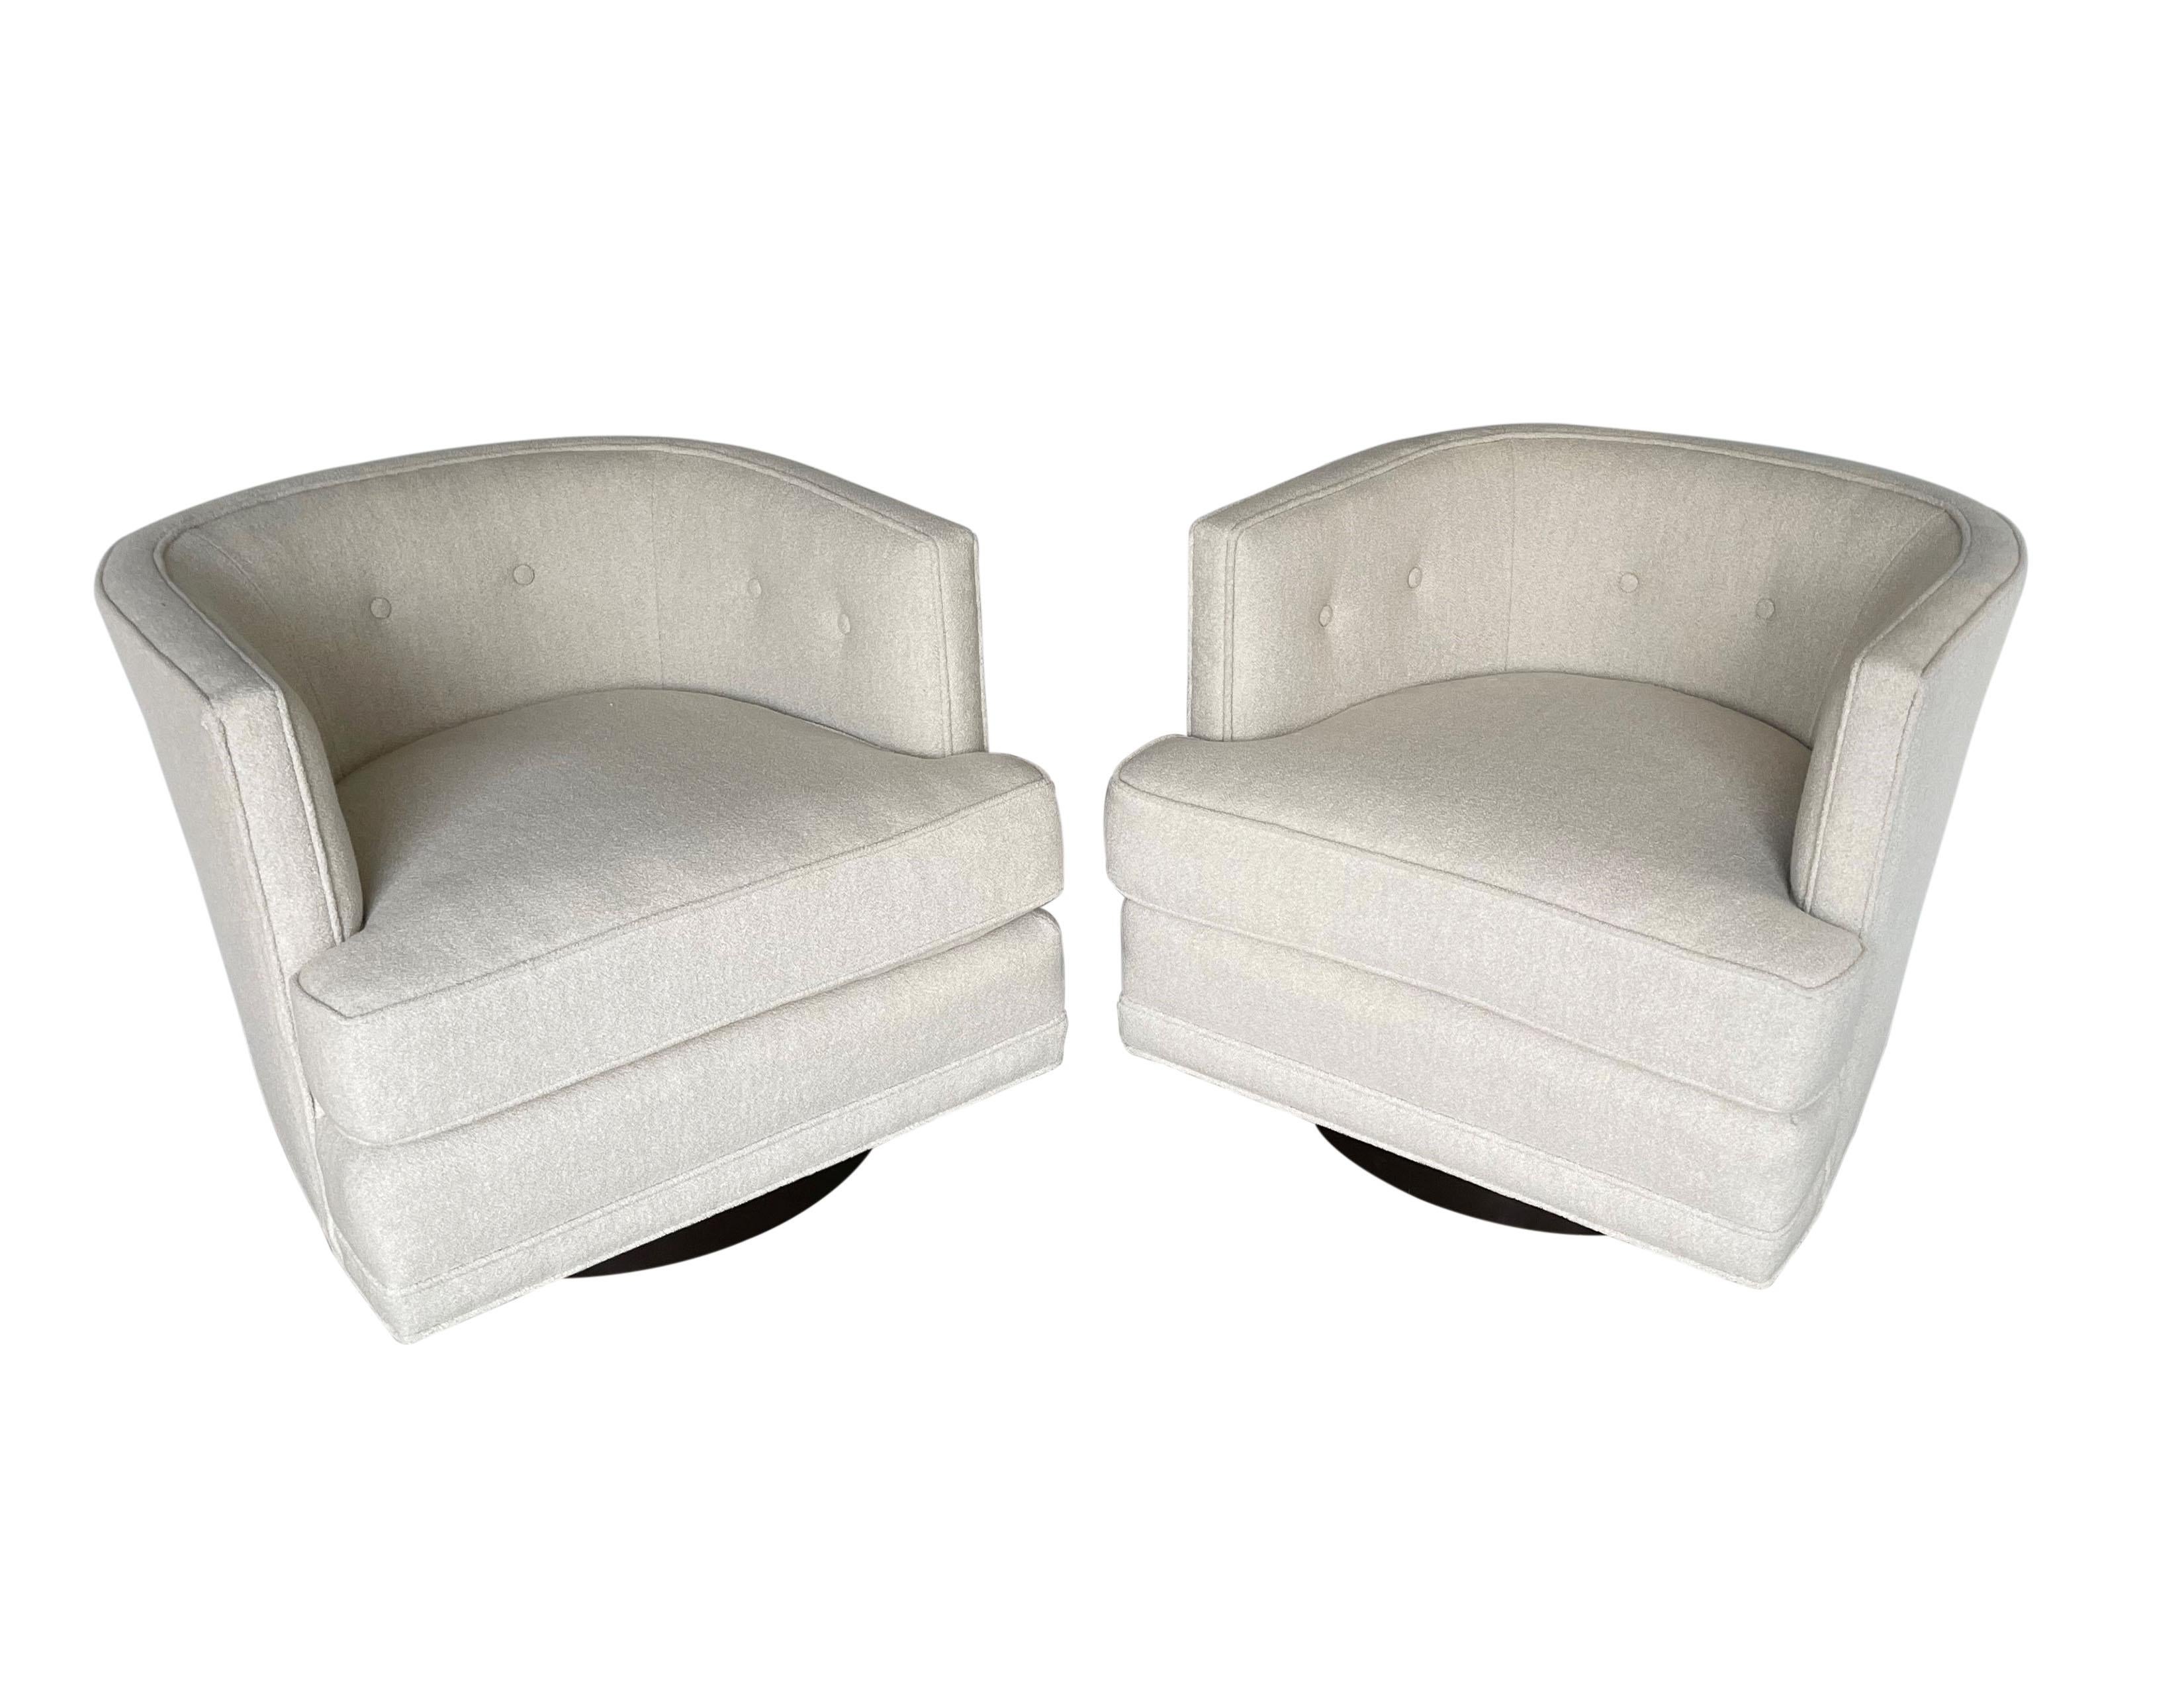 Le glamour rétro rencontre le confort moderne : une paire de chaises longues pivotantes attribuée à Harvey Probber. Les chaises parfaitement adaptées sont dotées d'un dossier touffeté en tonneau qui crée une étreinte confortable, d'un siège